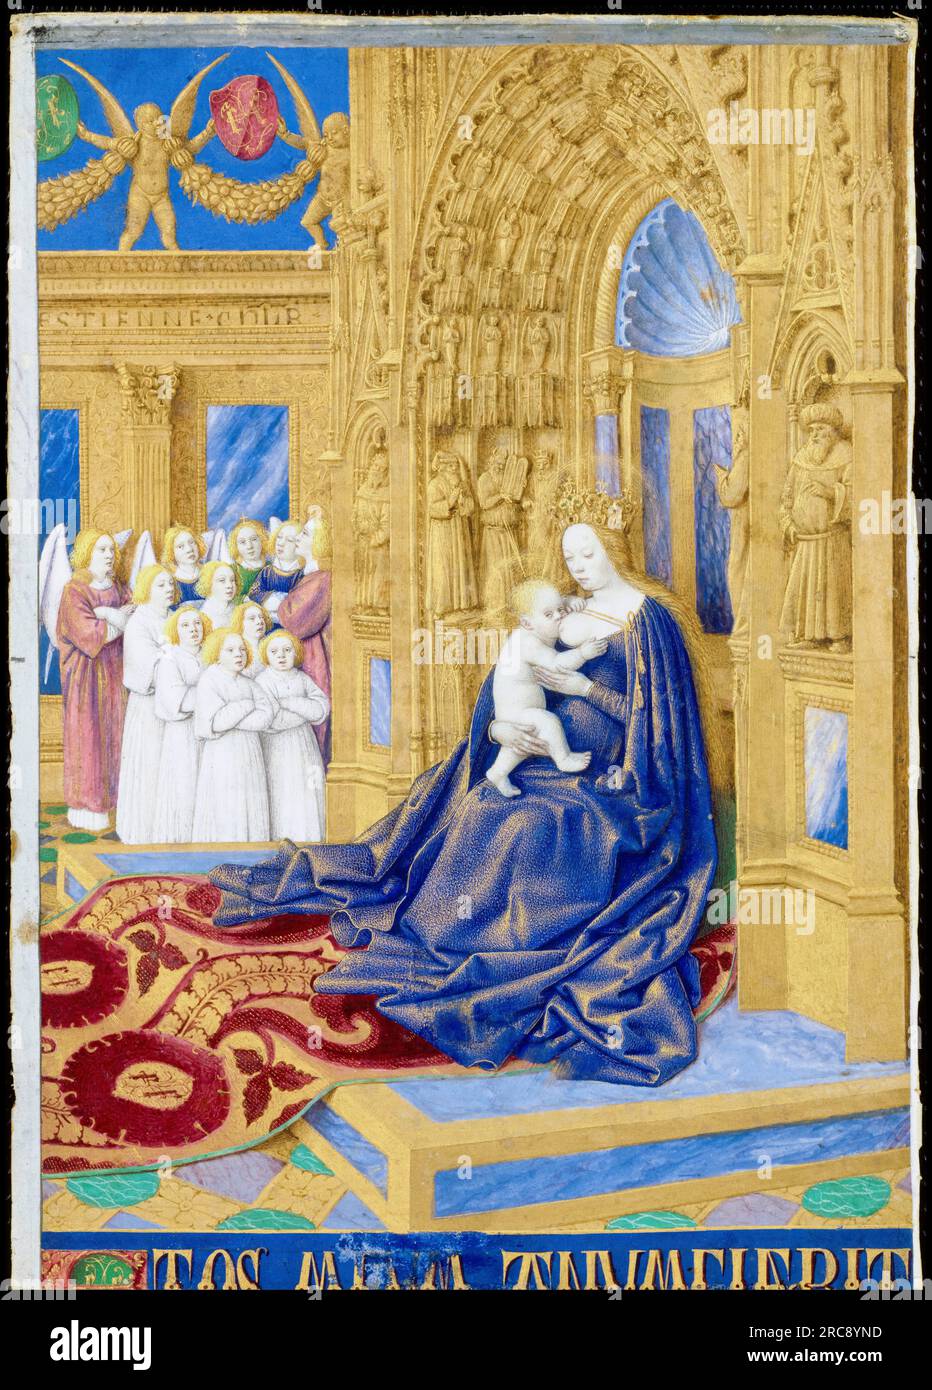 Jungfrau in Majestät, die Christus pflegt, aus den Stunden von Etienne Chevalier, erleuchtetes Manuskript auf Pergament von Jean Fouquet, 1452-1460 Stockfoto